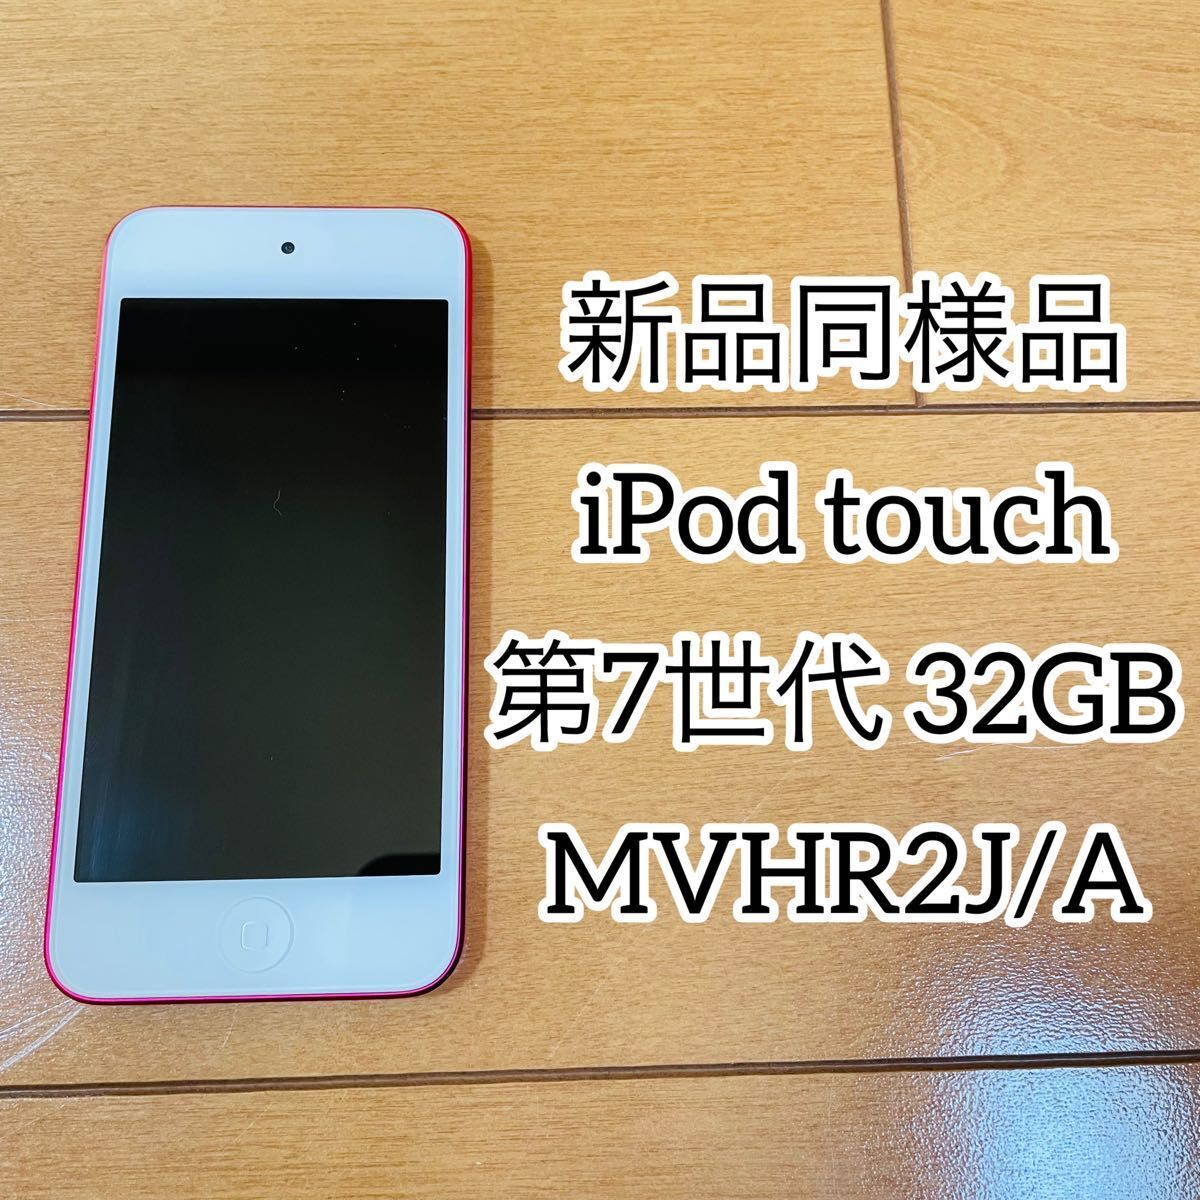 [ как новый товар ]iPod touch no. 7 поколение 32GB MVHR2J/A